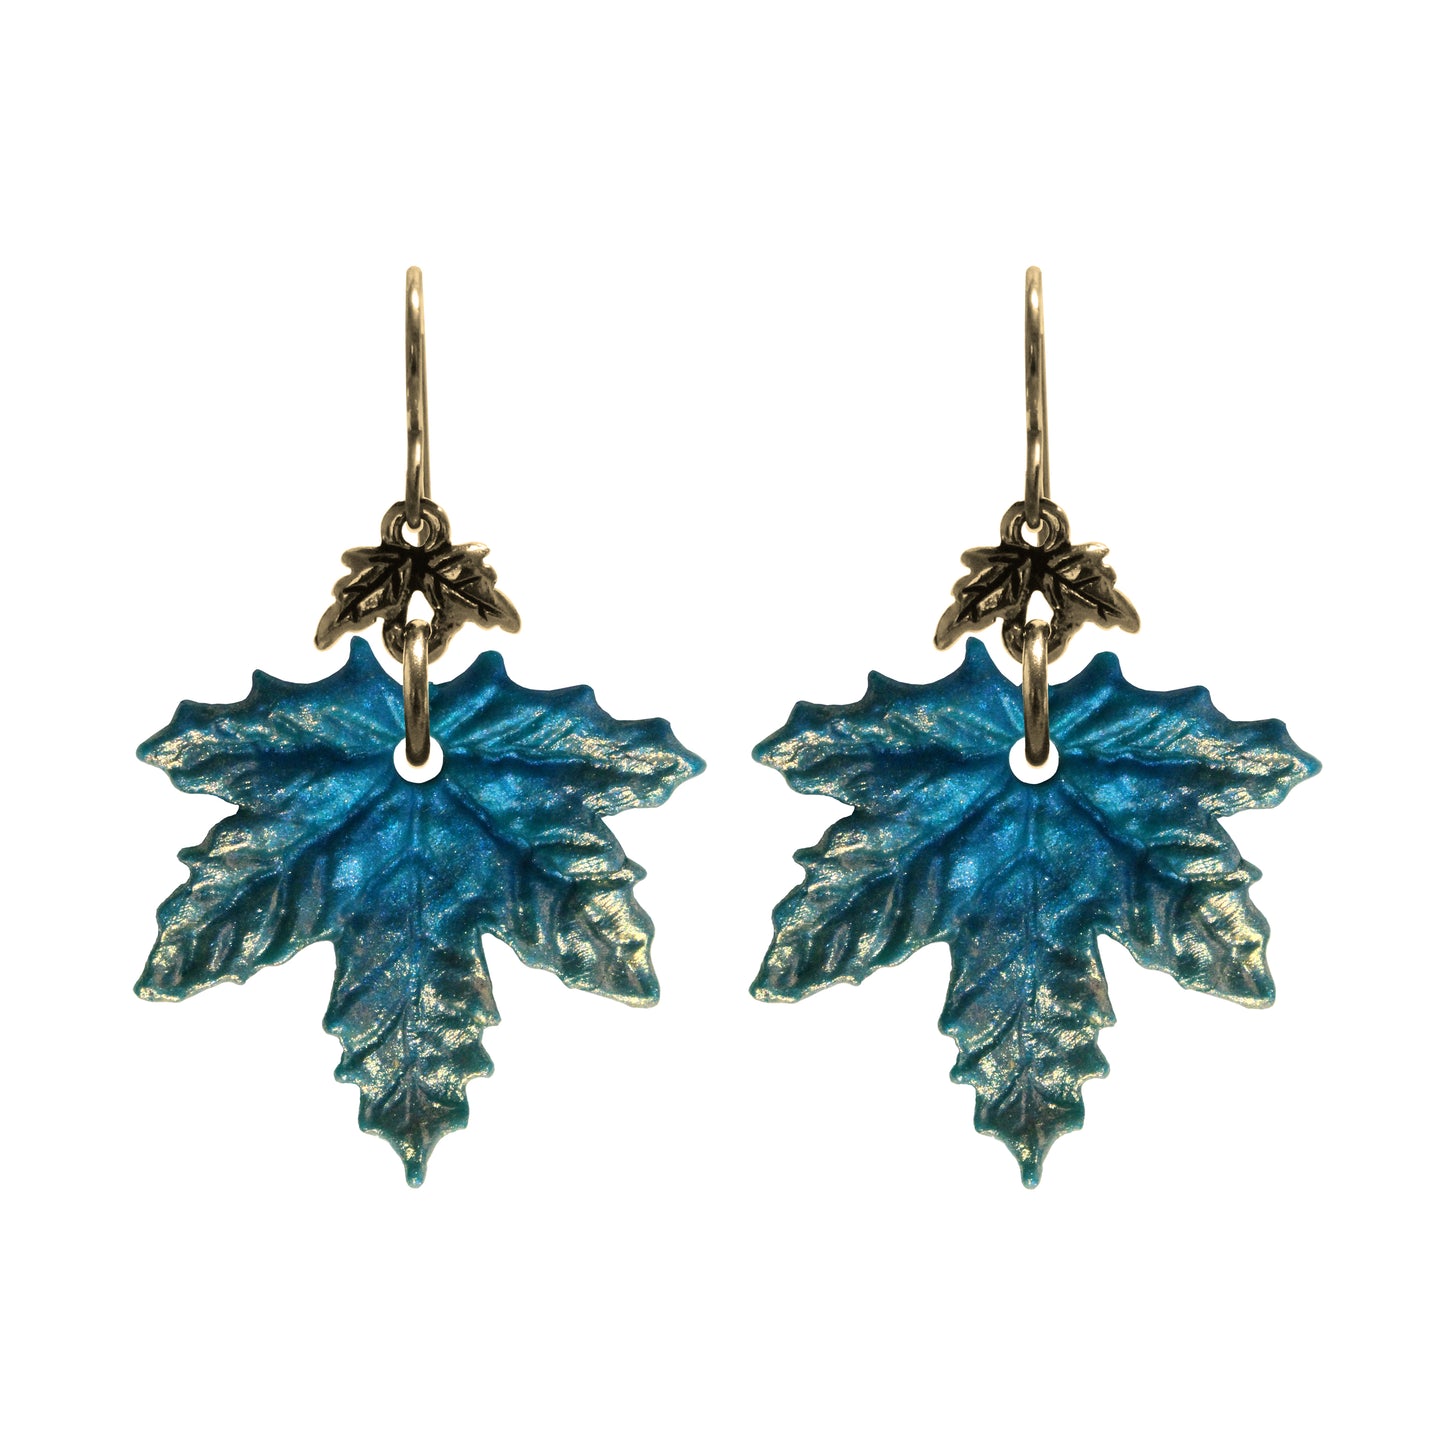 Winter Blue Maple Leaf Charm Earrings / gold filled hook earwires